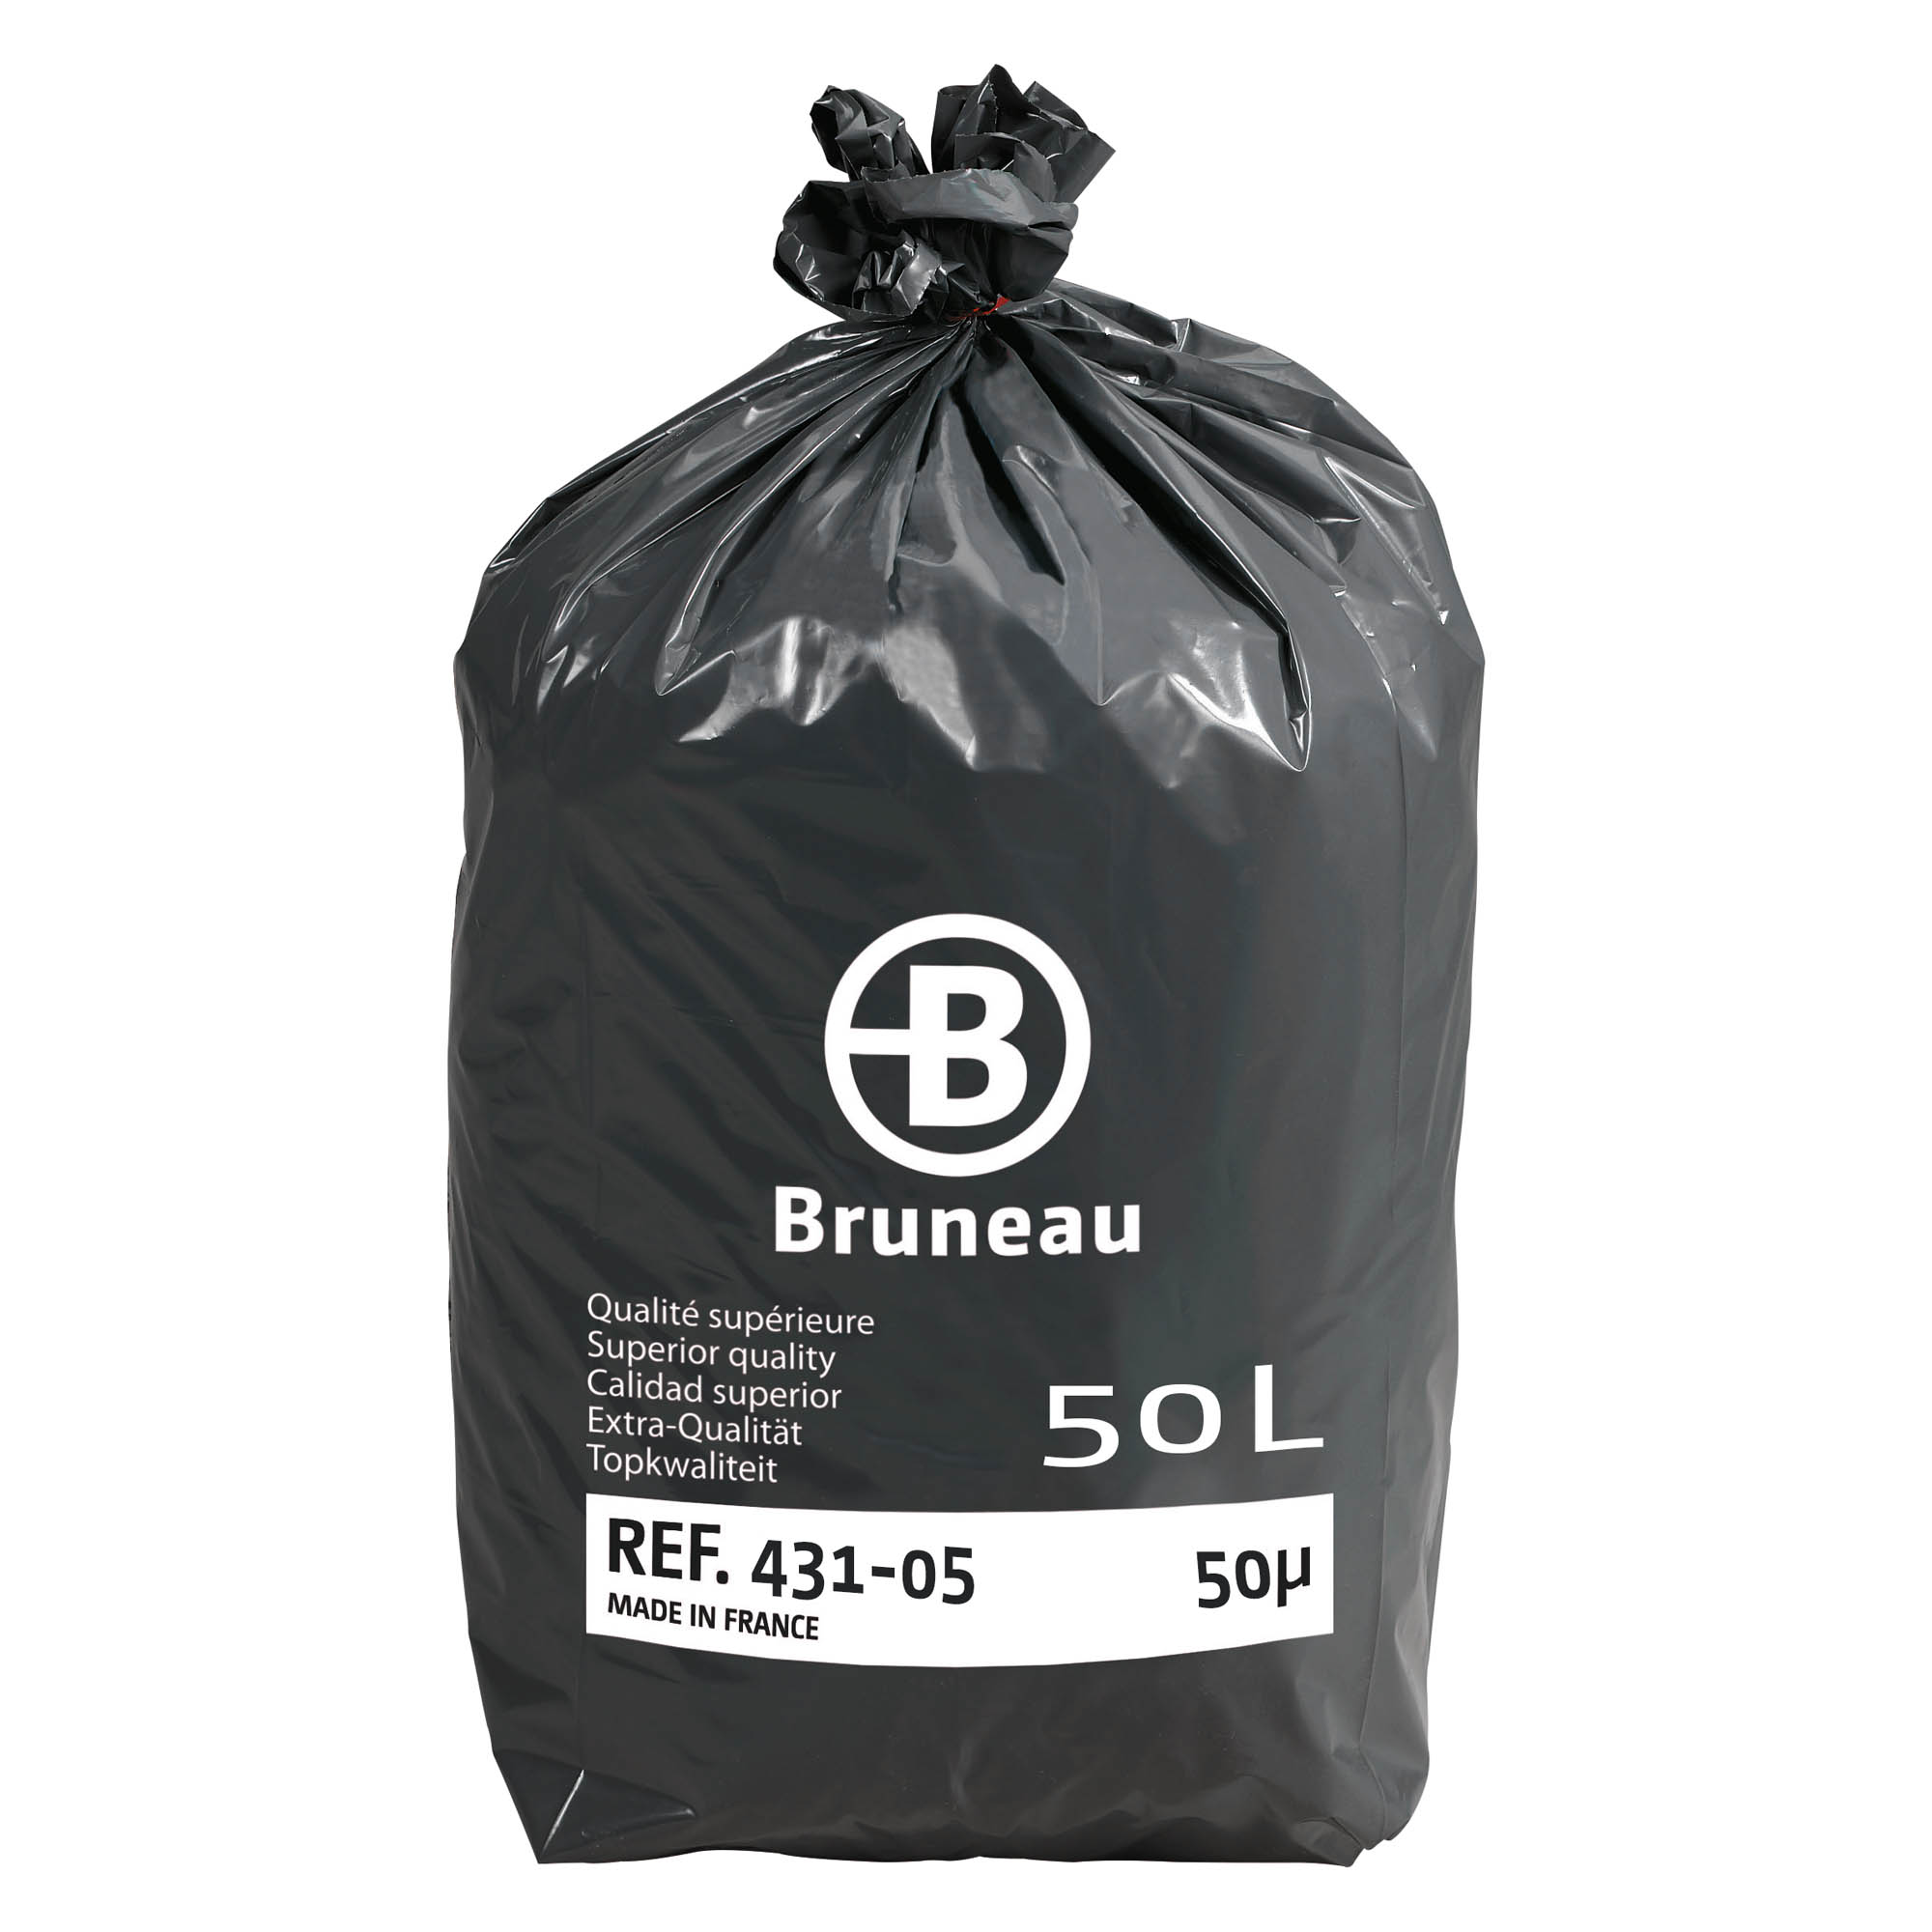 Sac poubelle 50 litres qualité supérieure Bruneau gris - 200 sacs